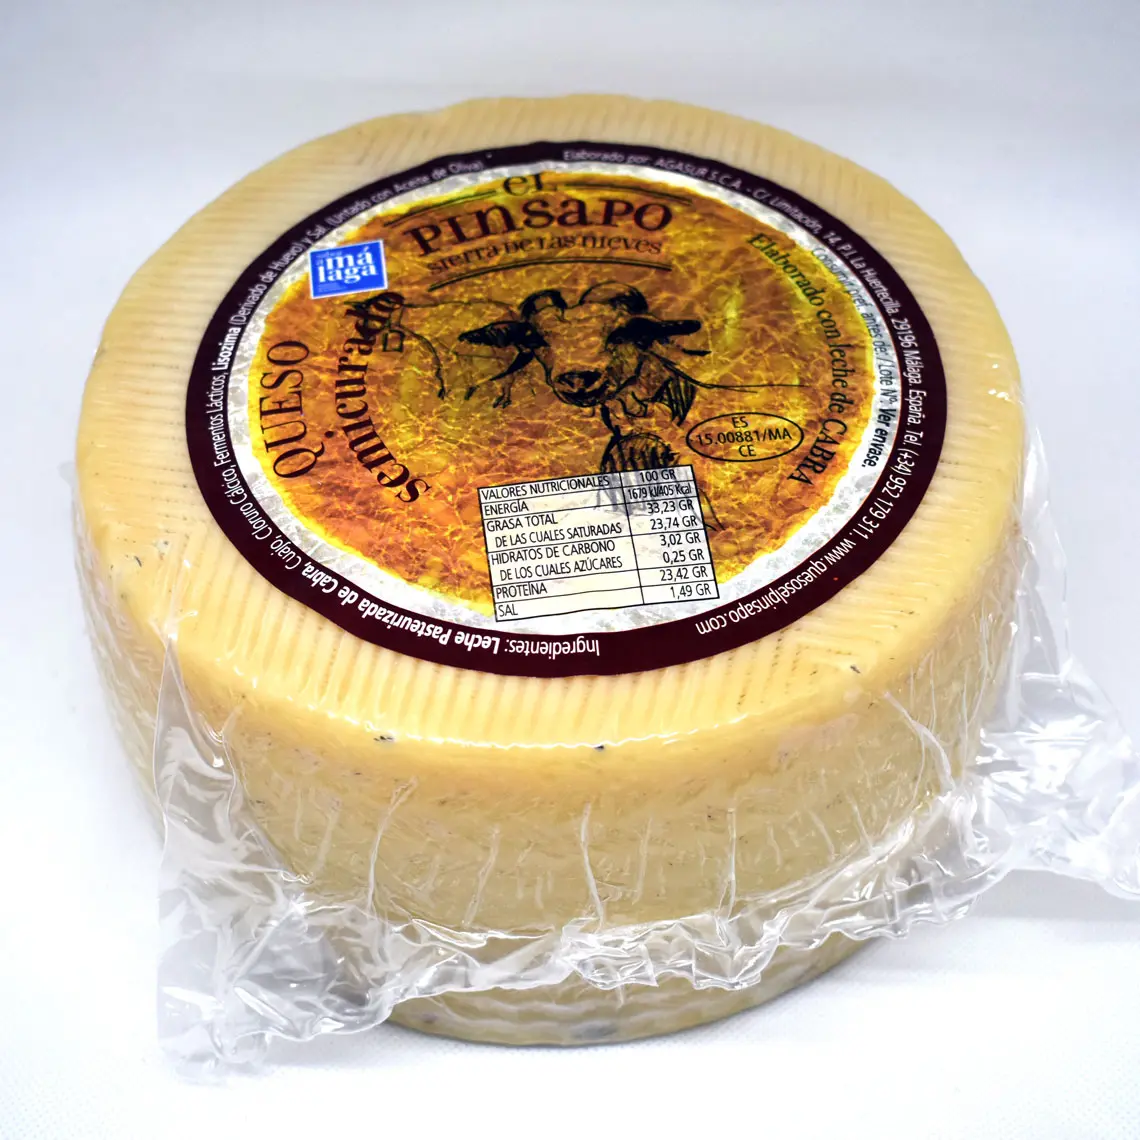 quesos el pinsapo - Cómo se llama el queso que es salado